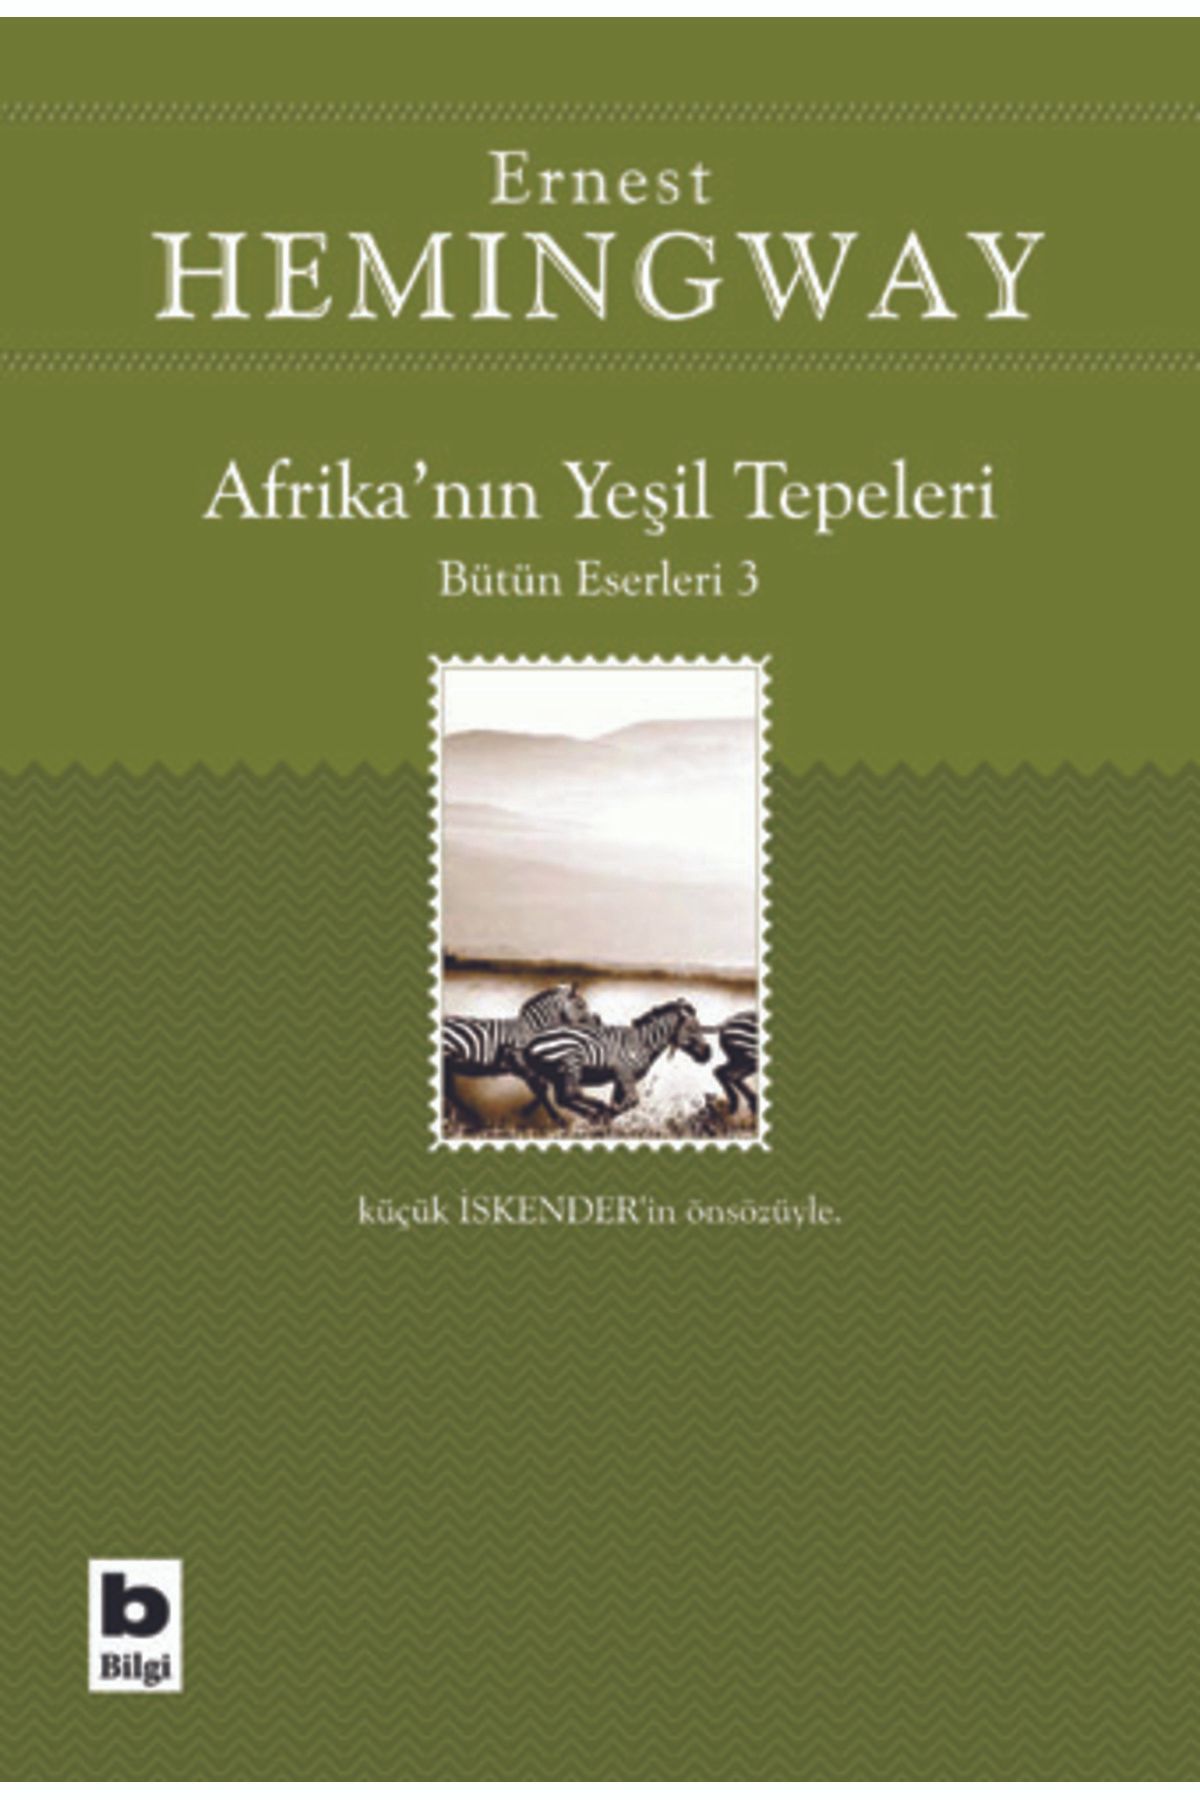 Bilgi Yayınları Afrika’nın Yeşil Tepeleri Bütün Eserleri 3